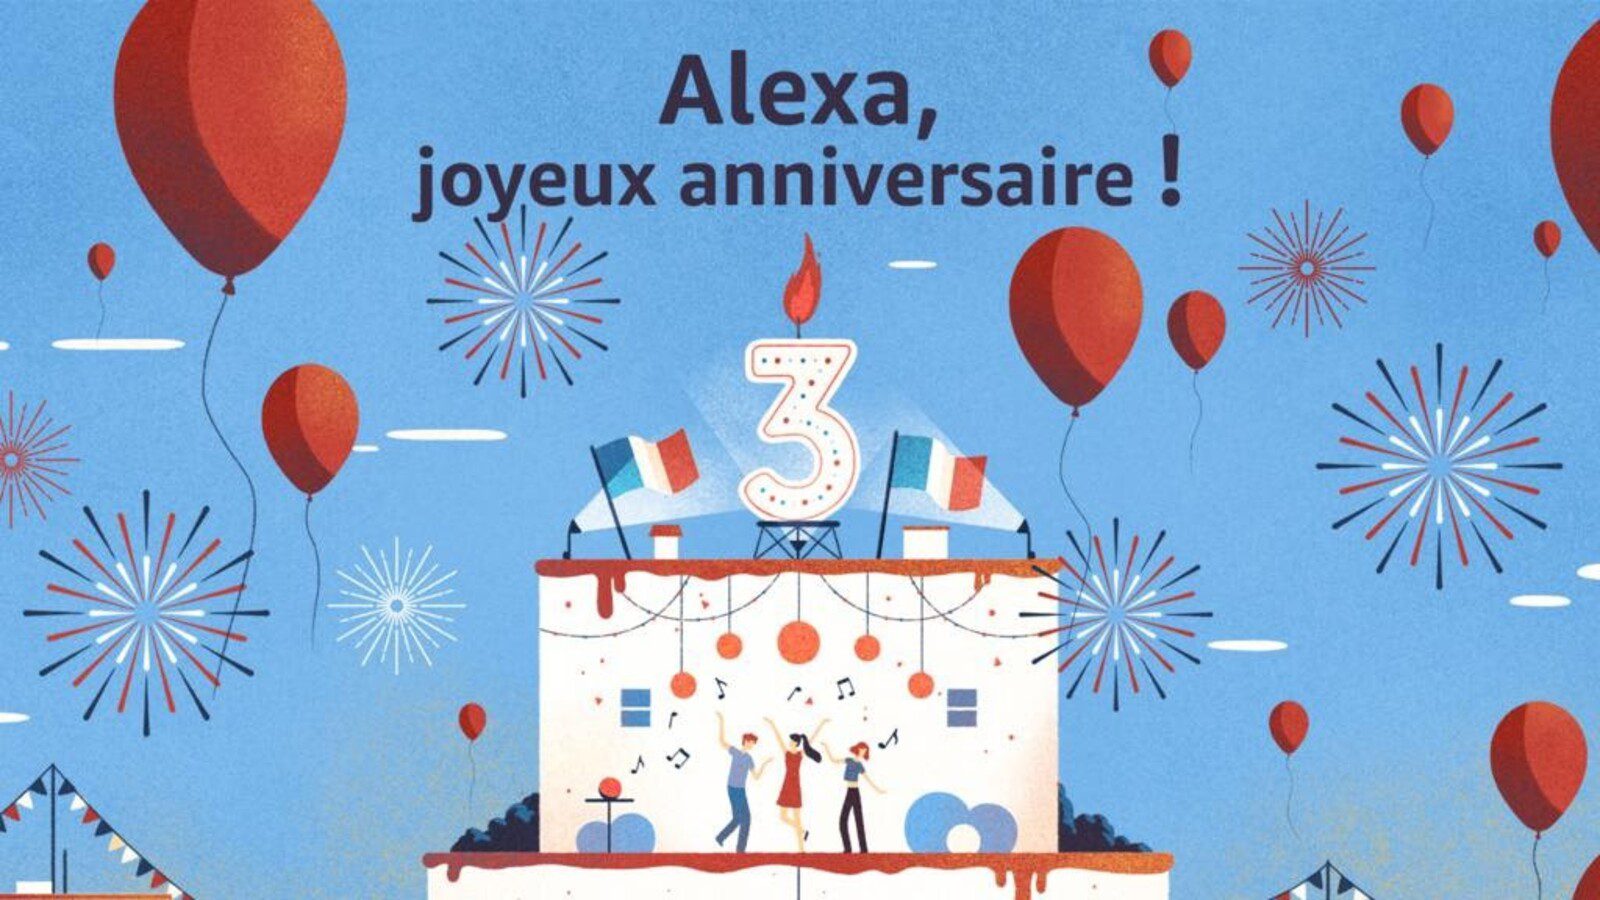 Amazon Alexa firar 3 år i Frankrike: galna siffror på en framgångssaga